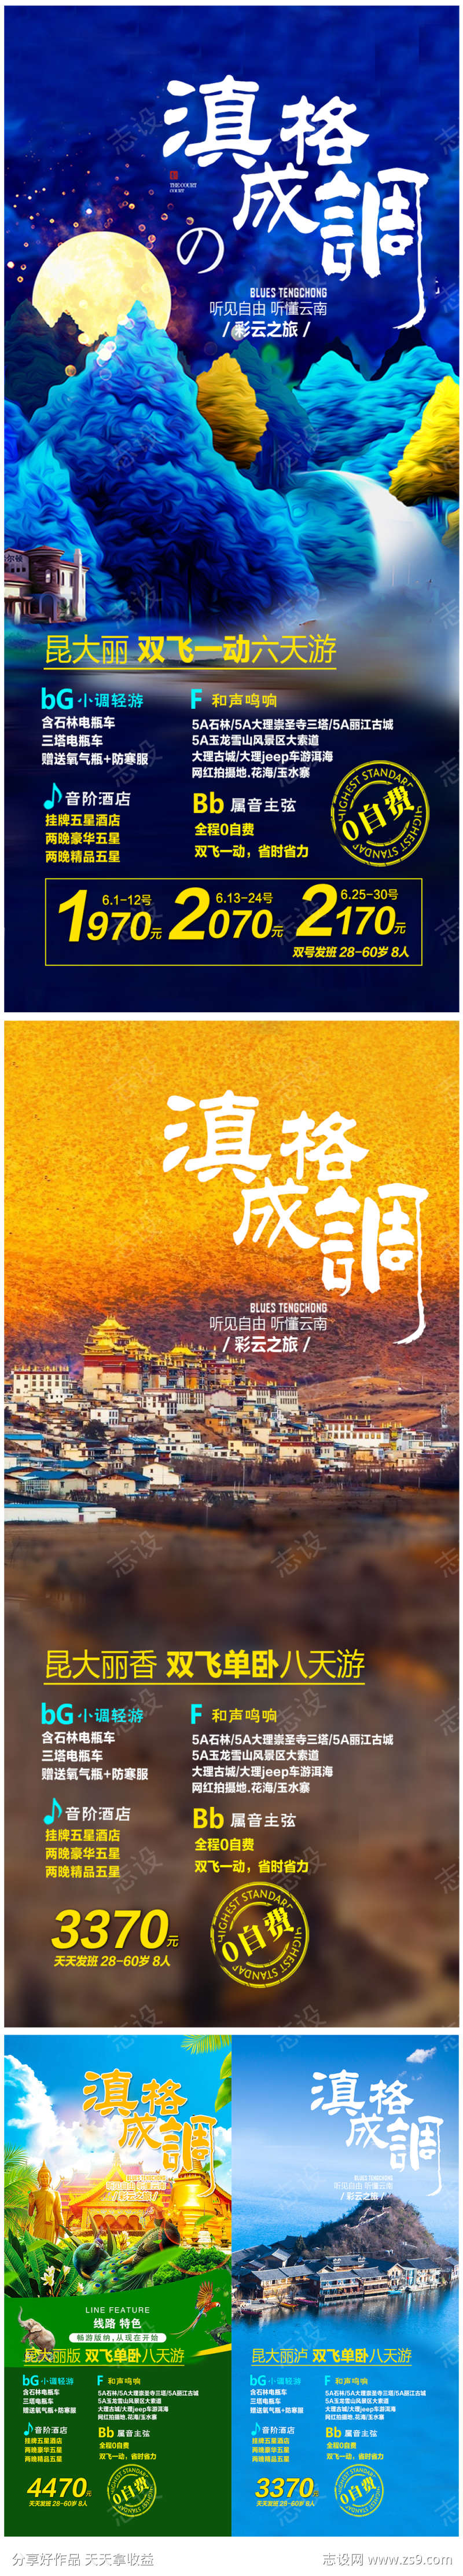 云南旅游海报广告系列